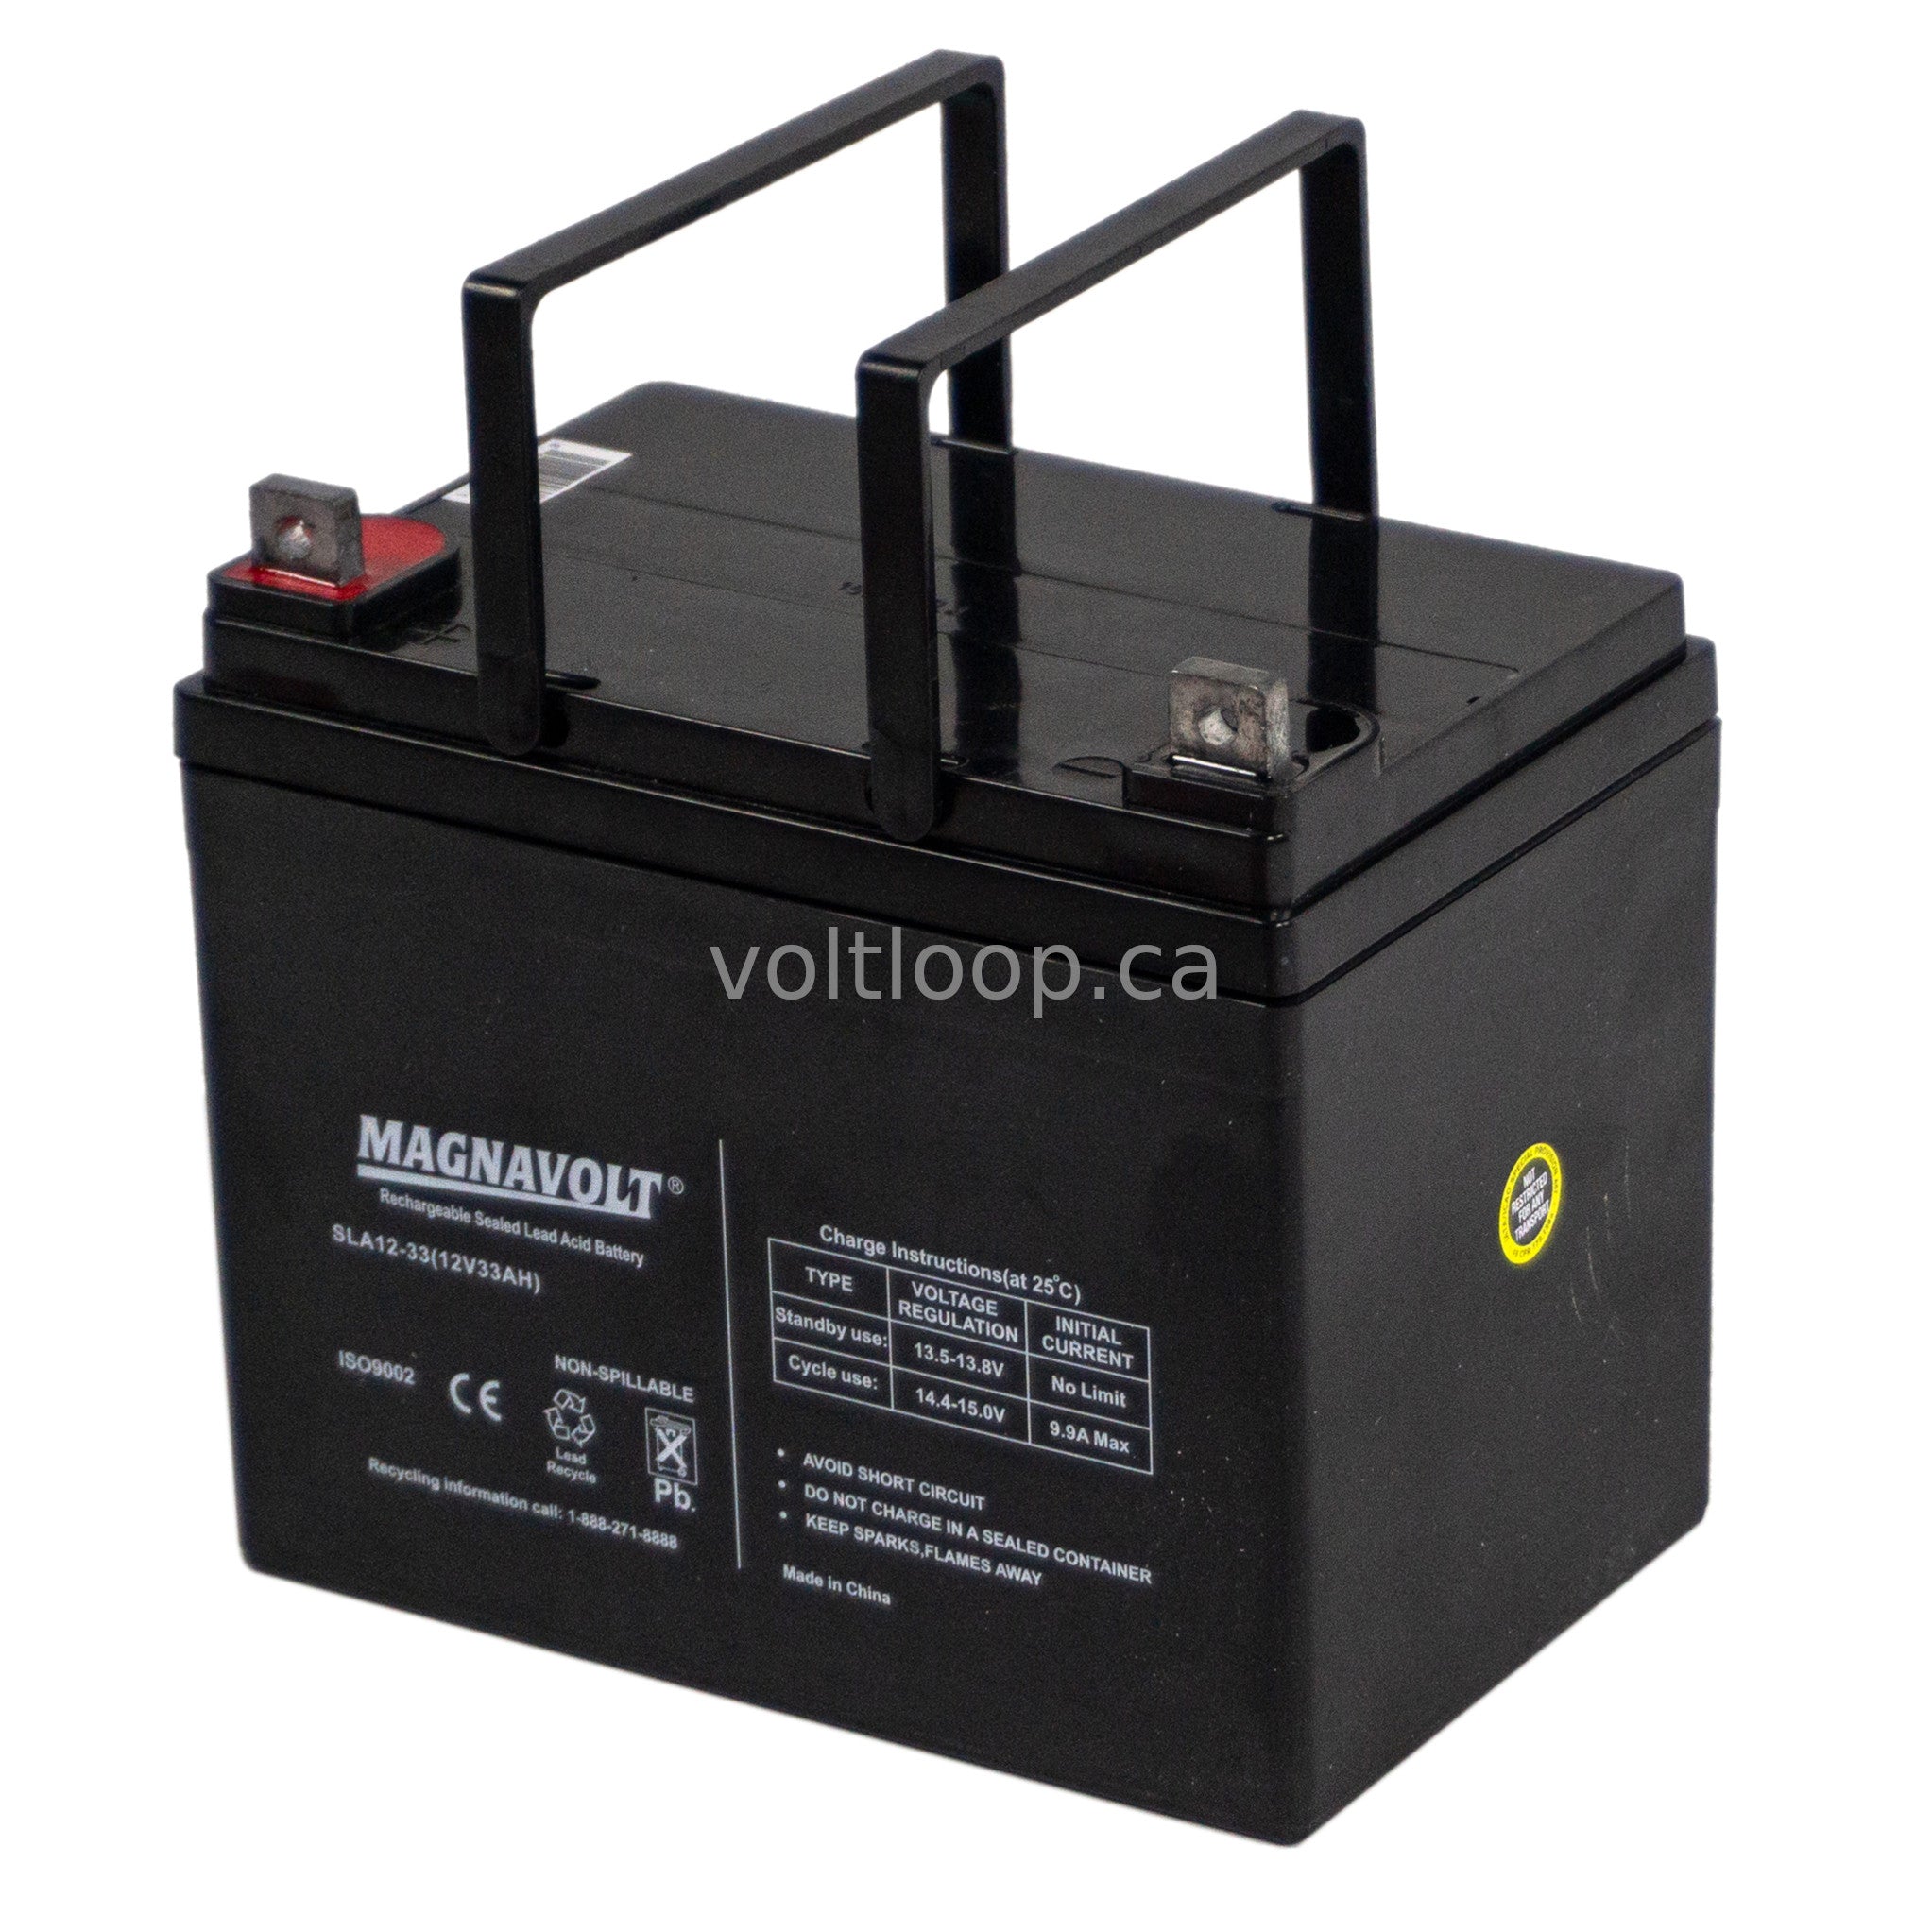 Magnavolt SLA12-33 12V 33 Ah Sealed Lead Acid Battery